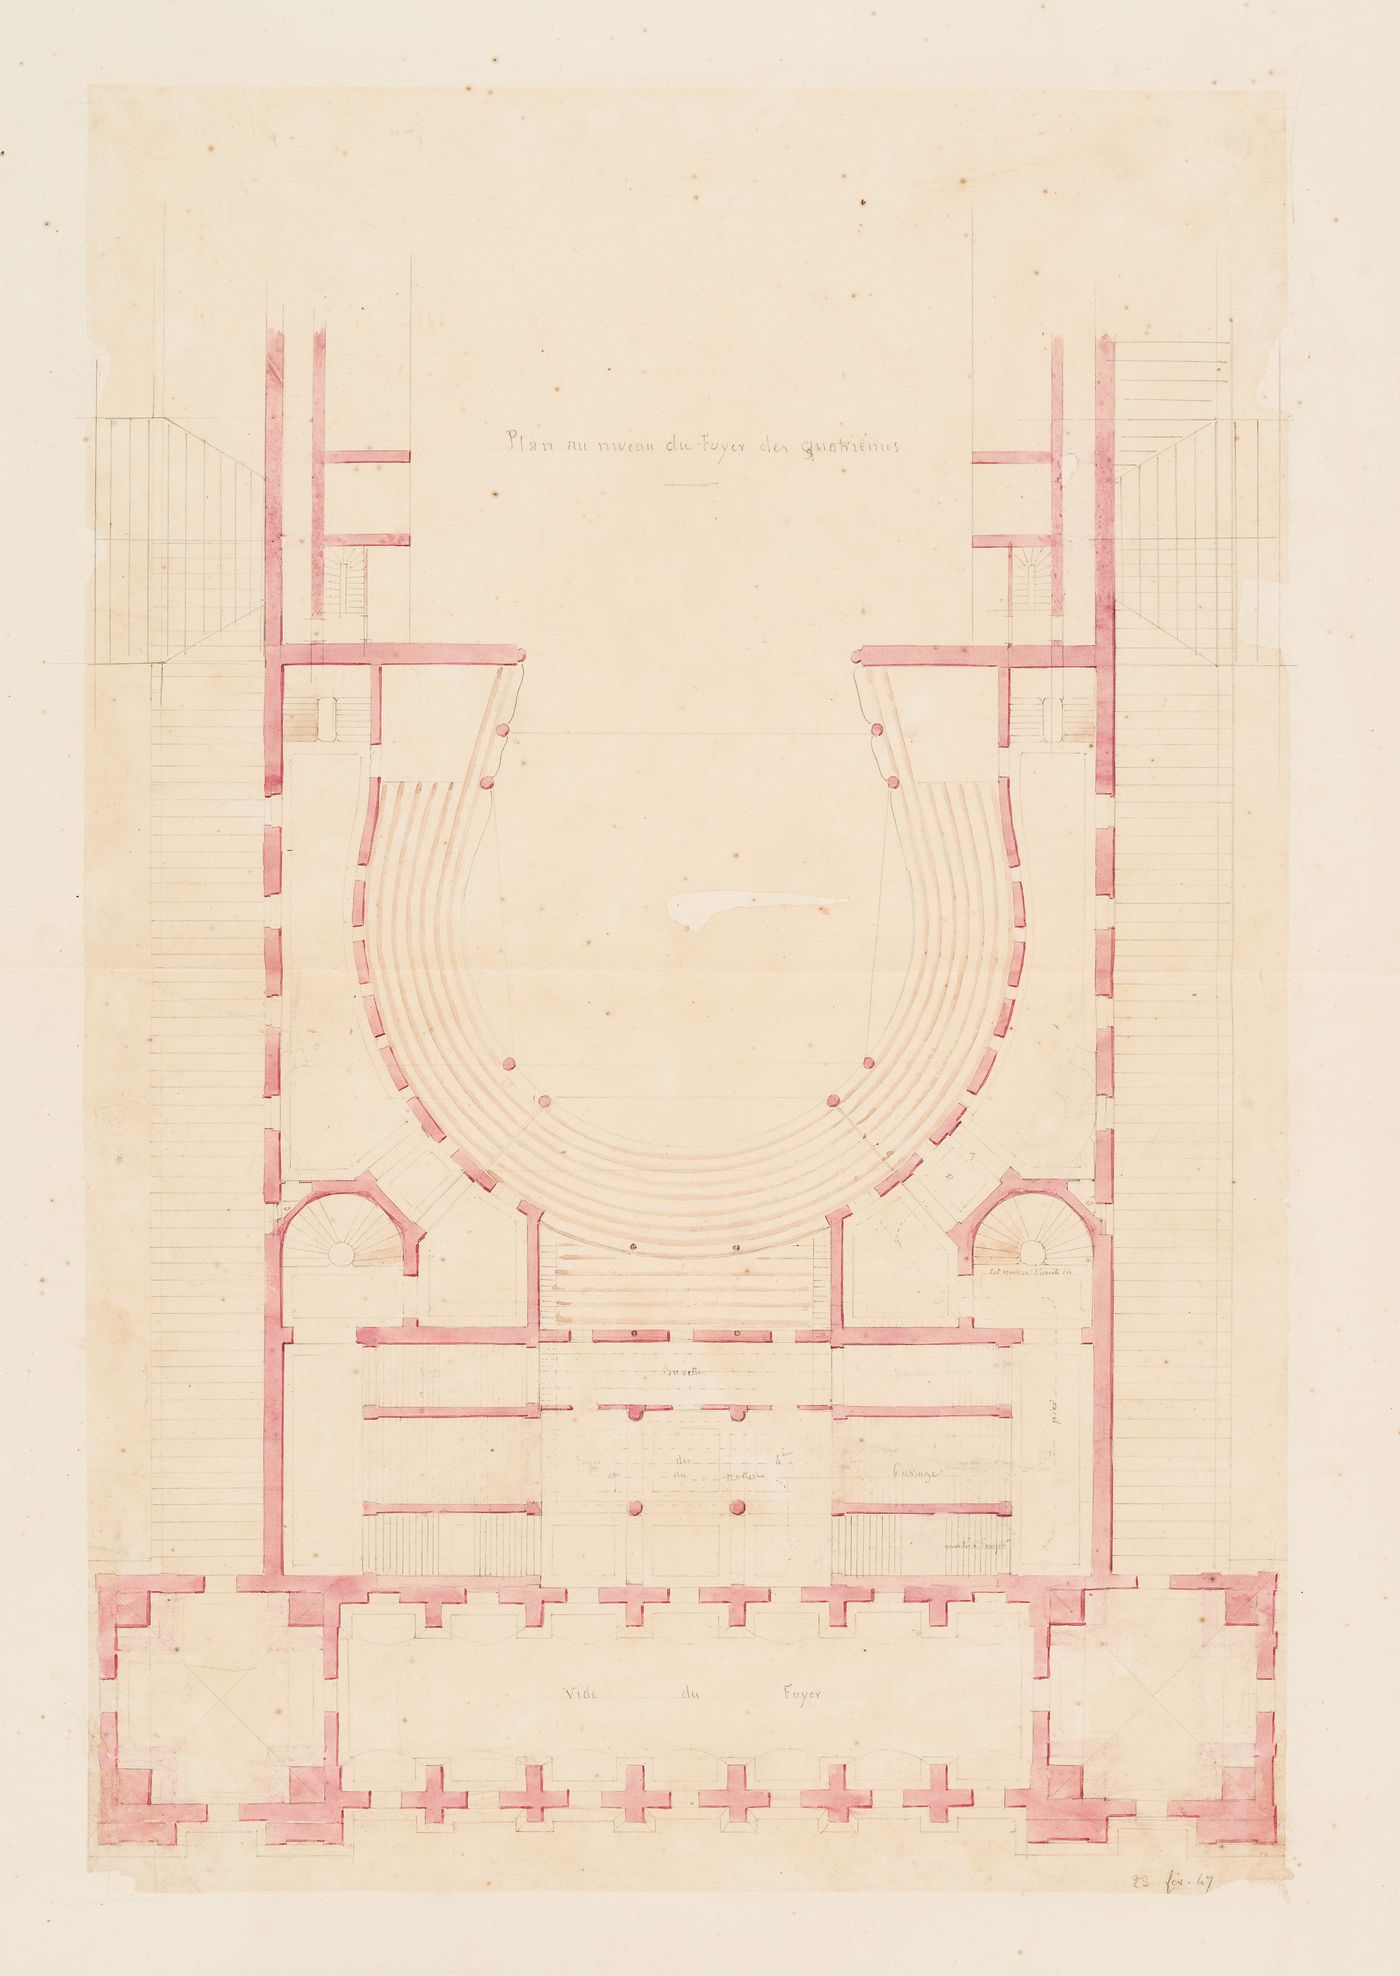 Plan for the "niveau du foyer des quatrièmes [sic]" for an opera house for the Académie royale de musique